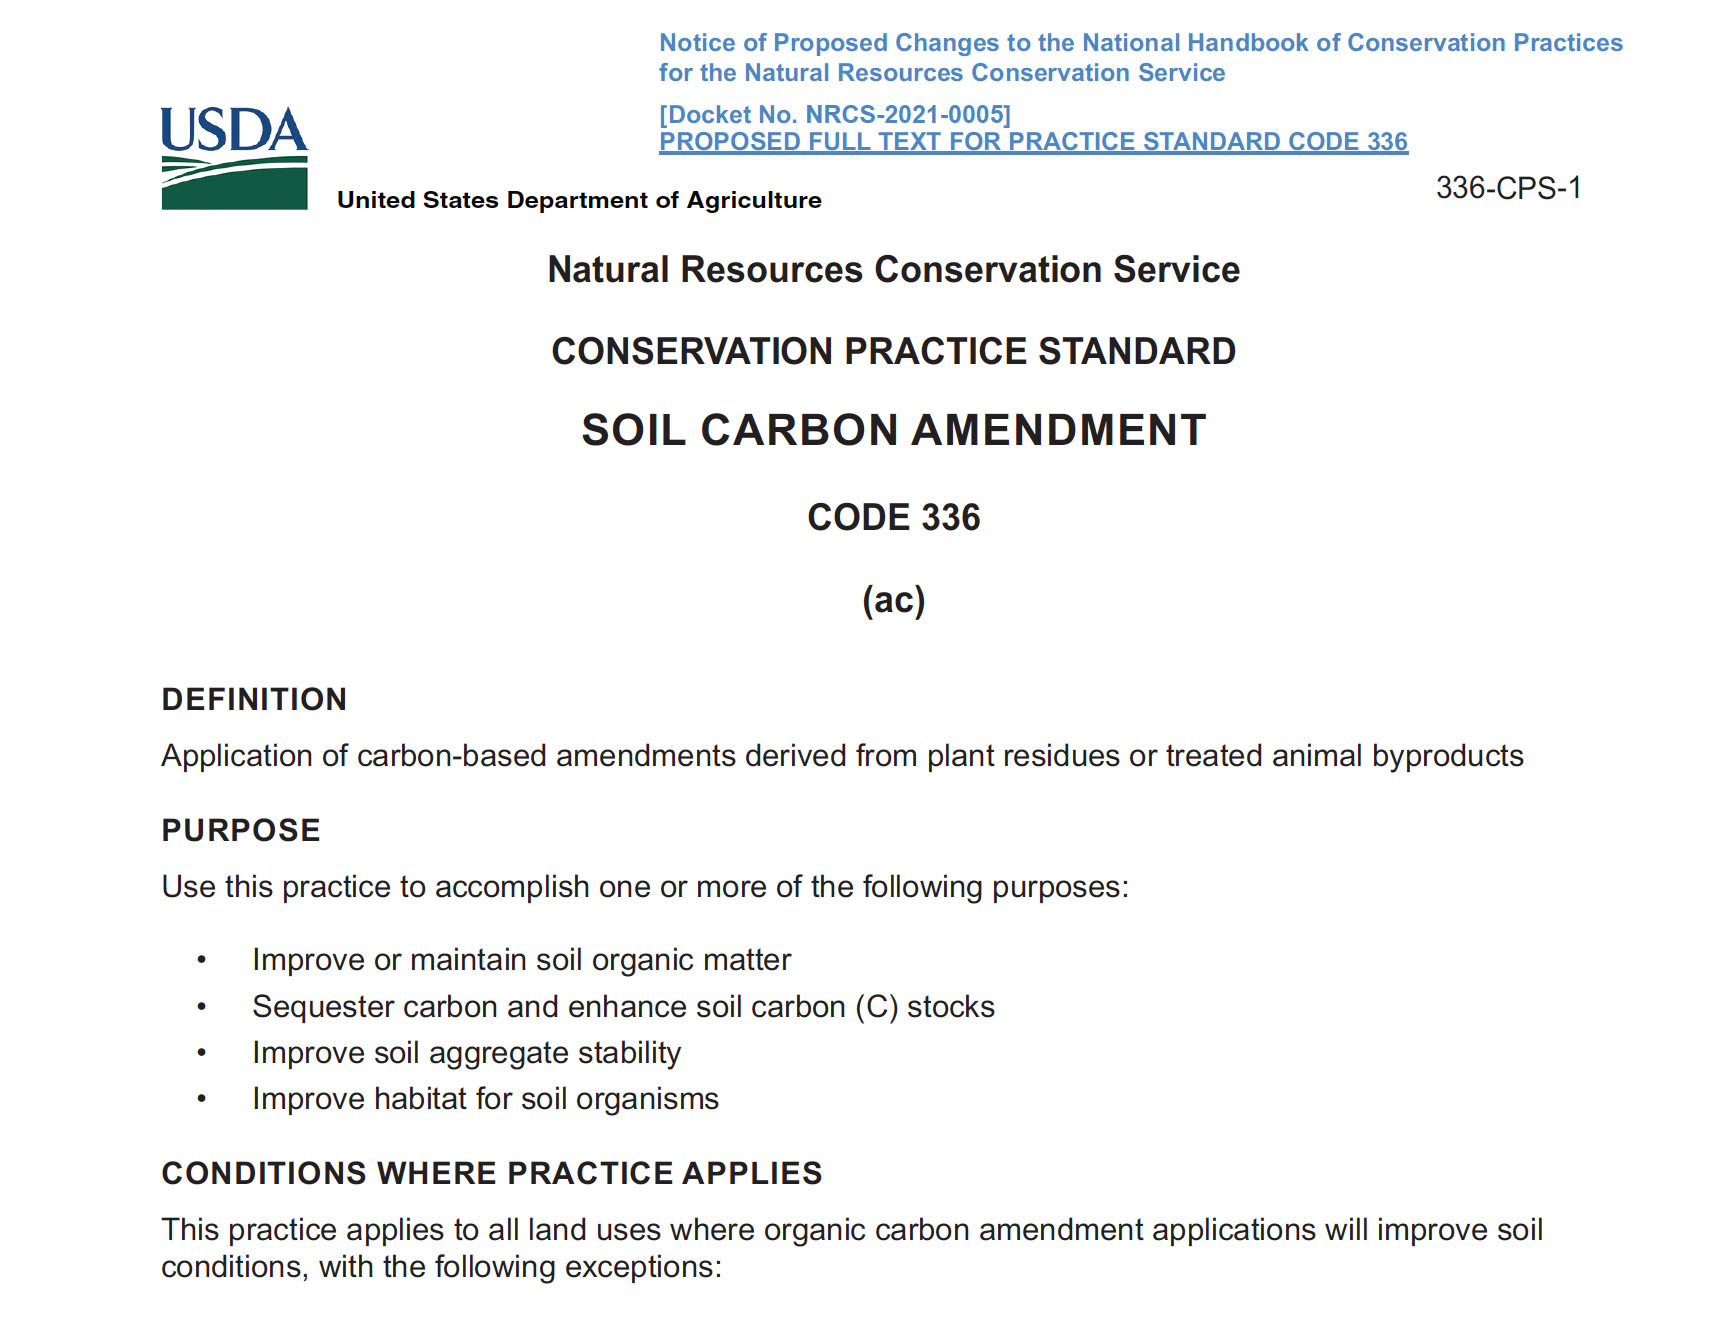 USDA NRCS Code 336 Soil Carbon Amendment